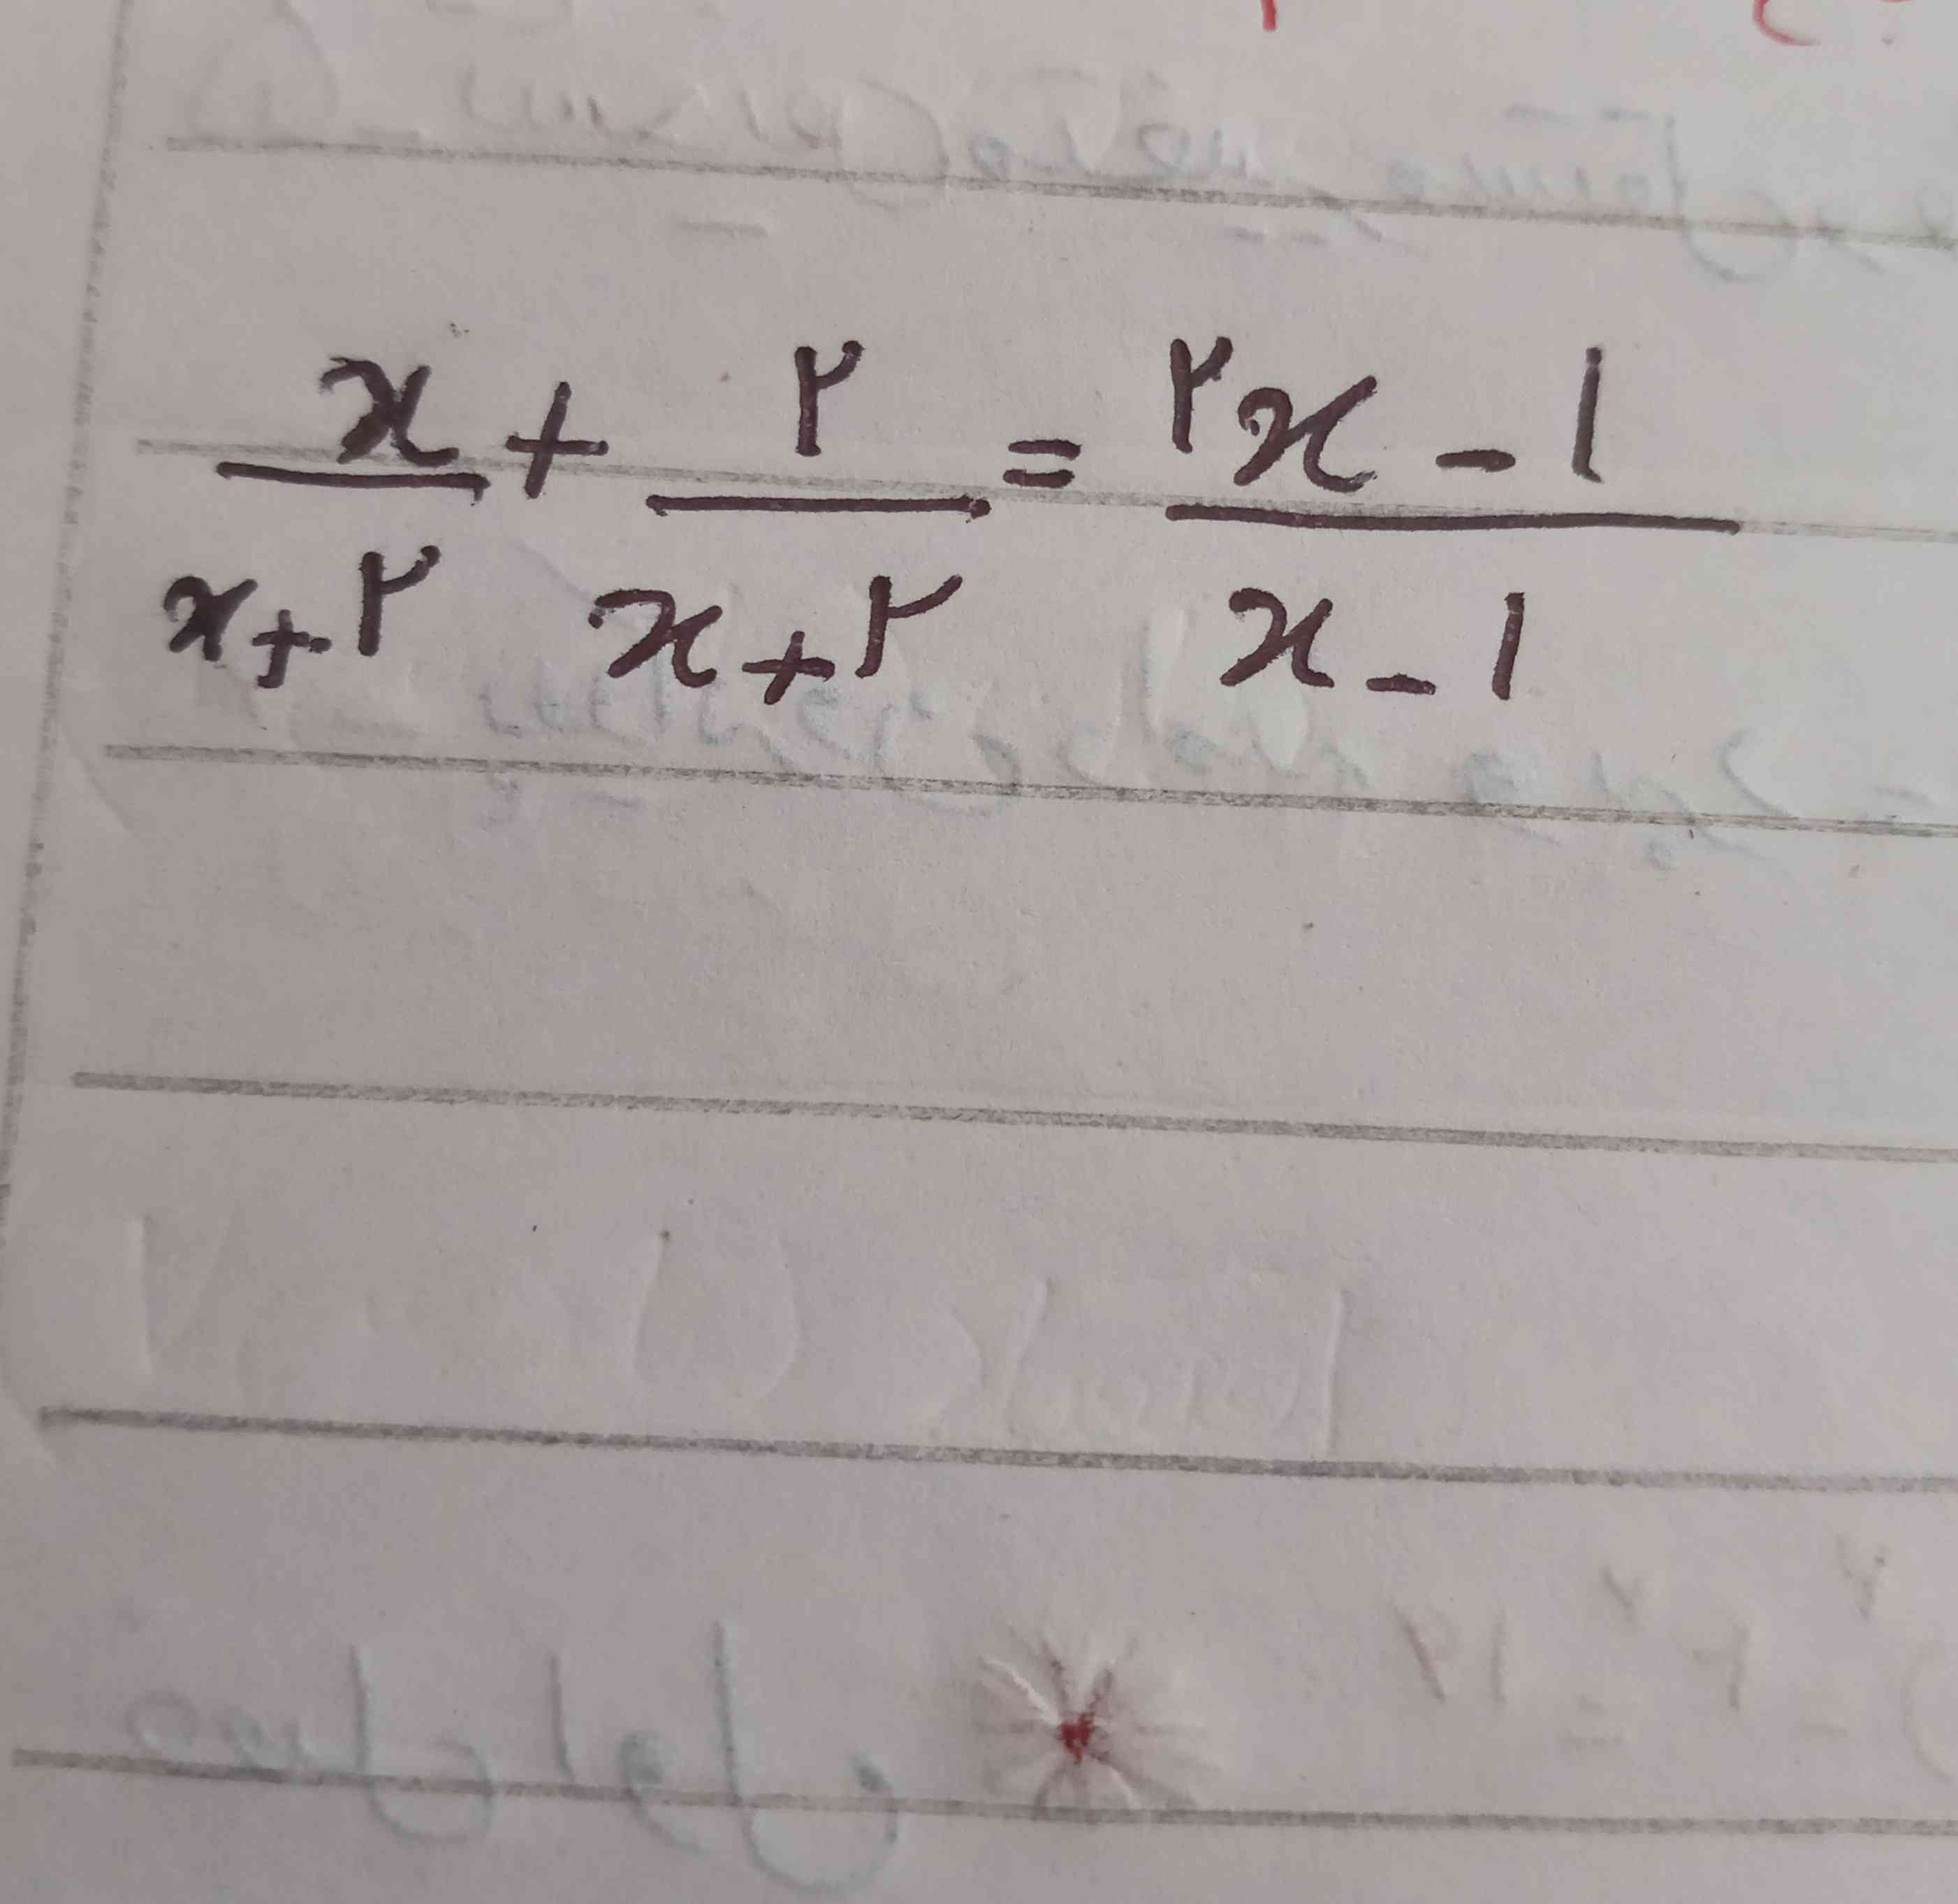 سلام لطفا برام این معادله گویا رو حل کنید(((( معرکه میدم به همه )))